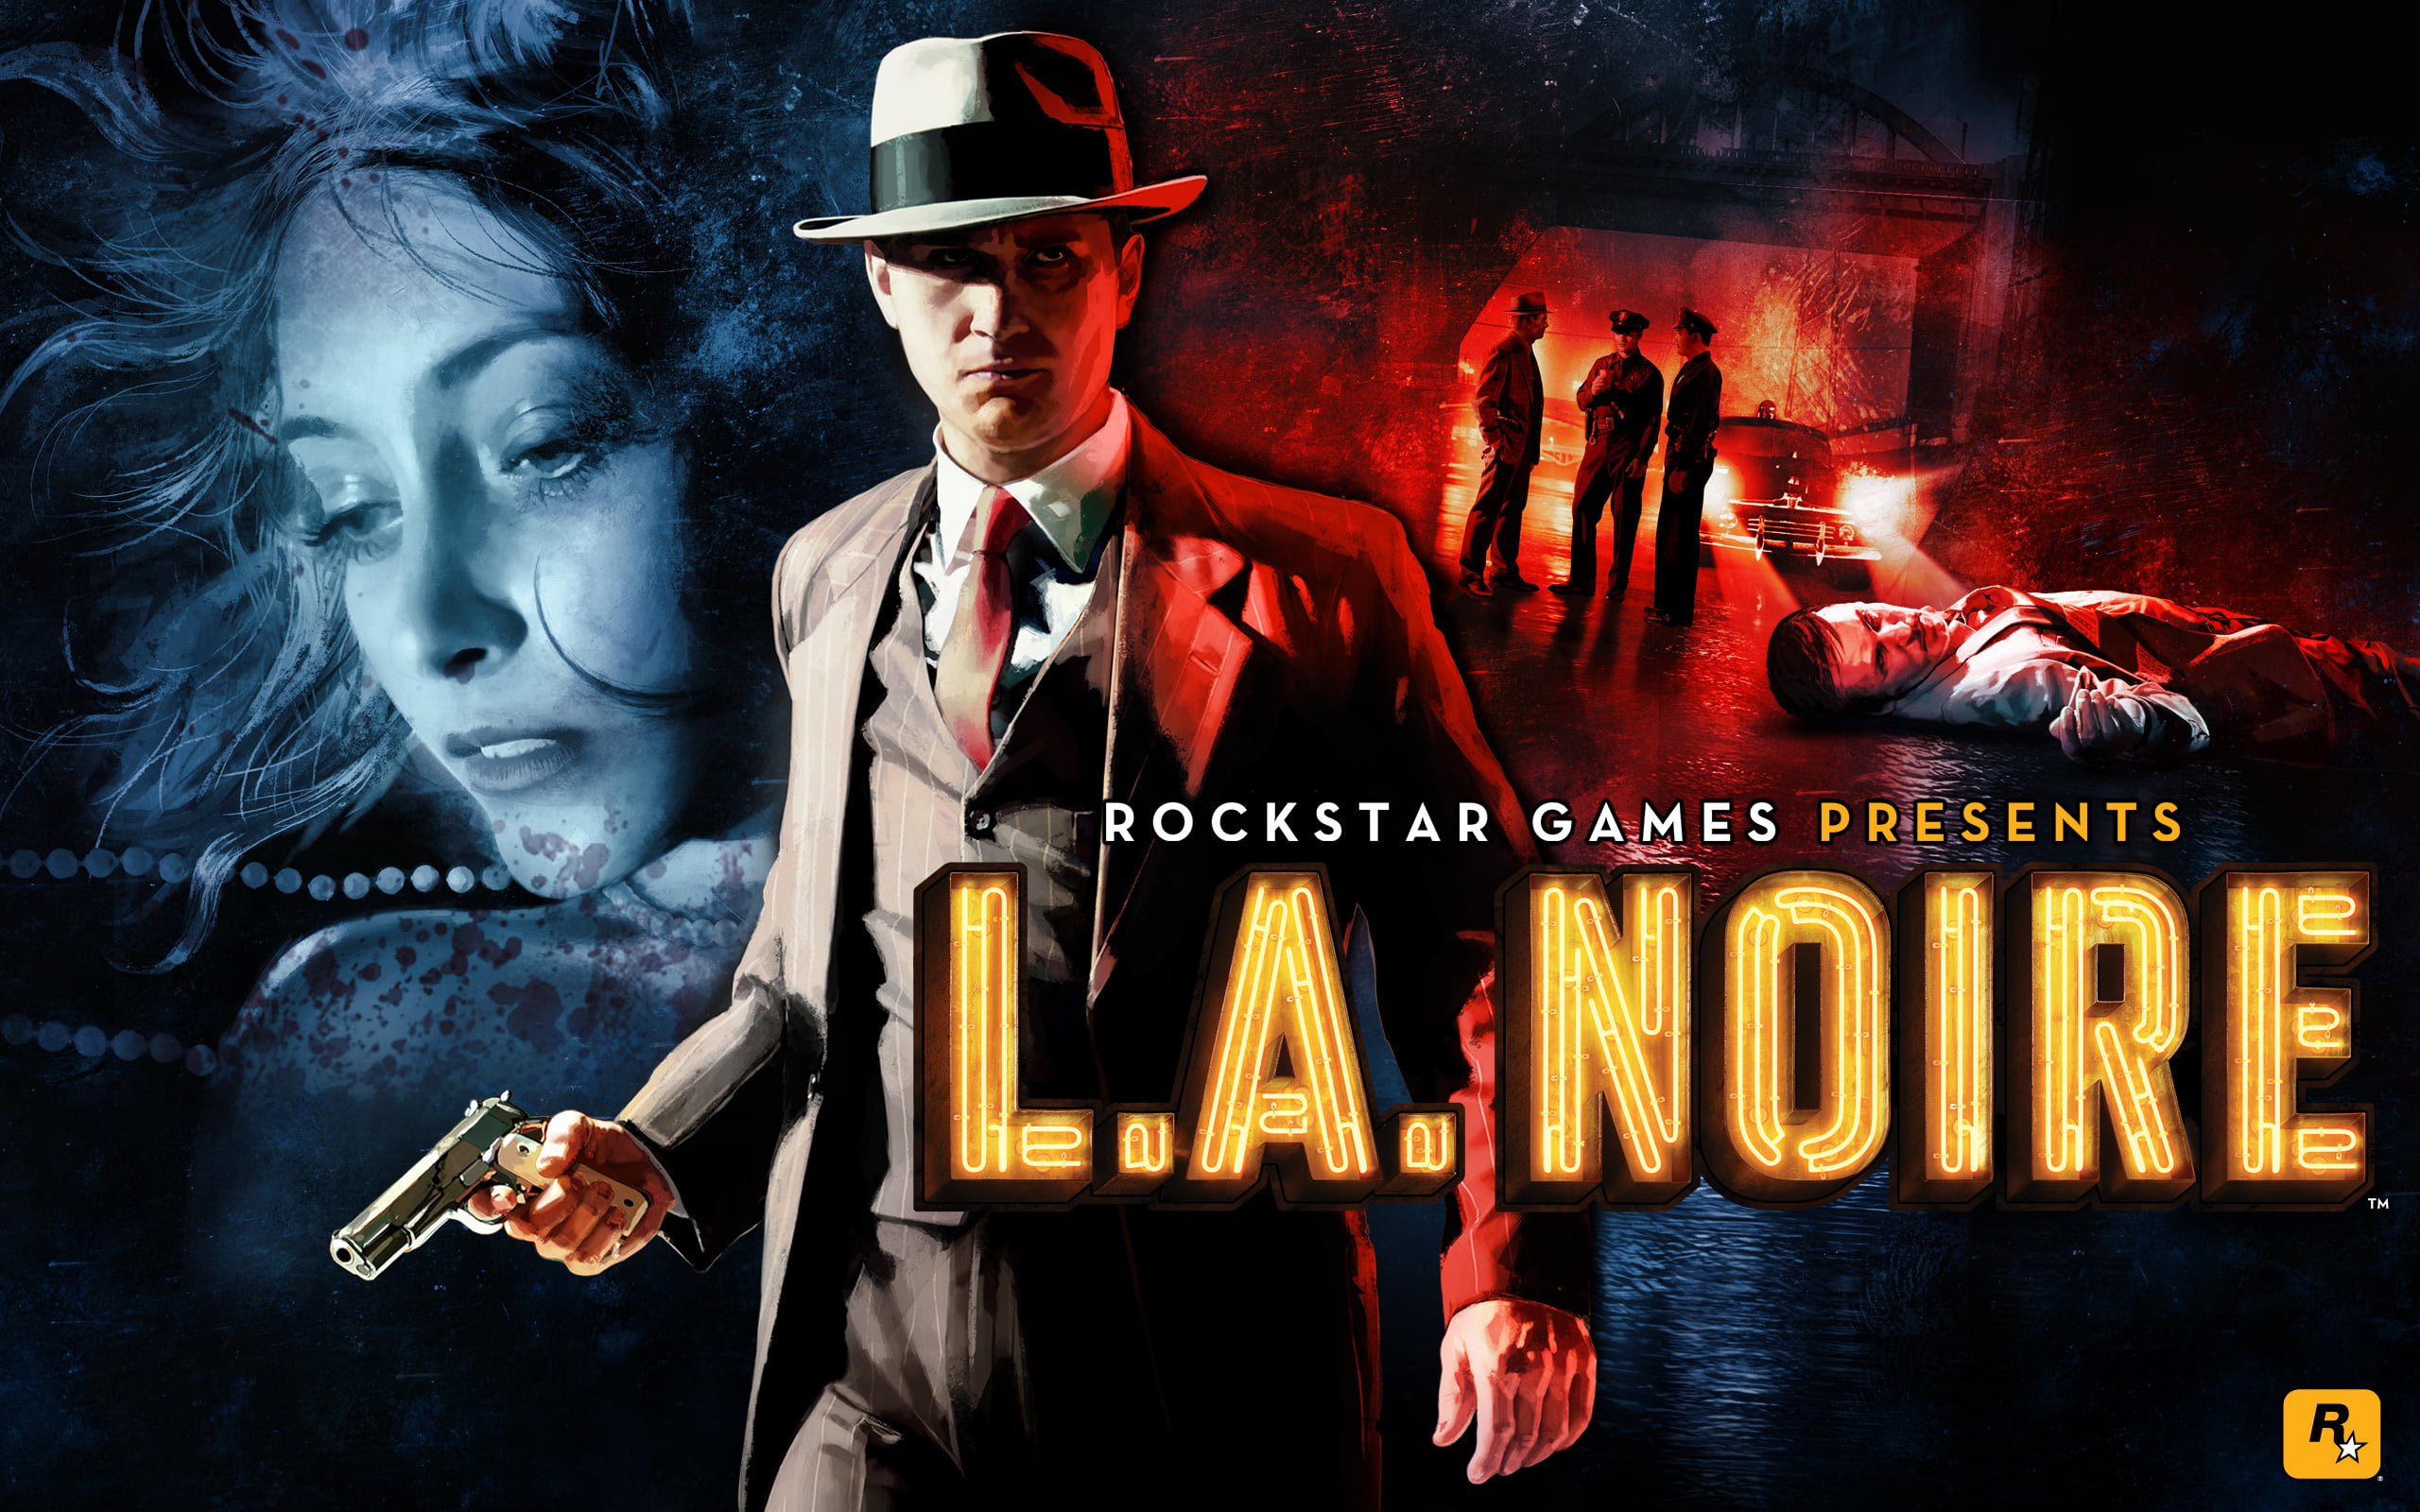 L.A. Noire, L.A. NOIRE poster, Games, social issues, communication